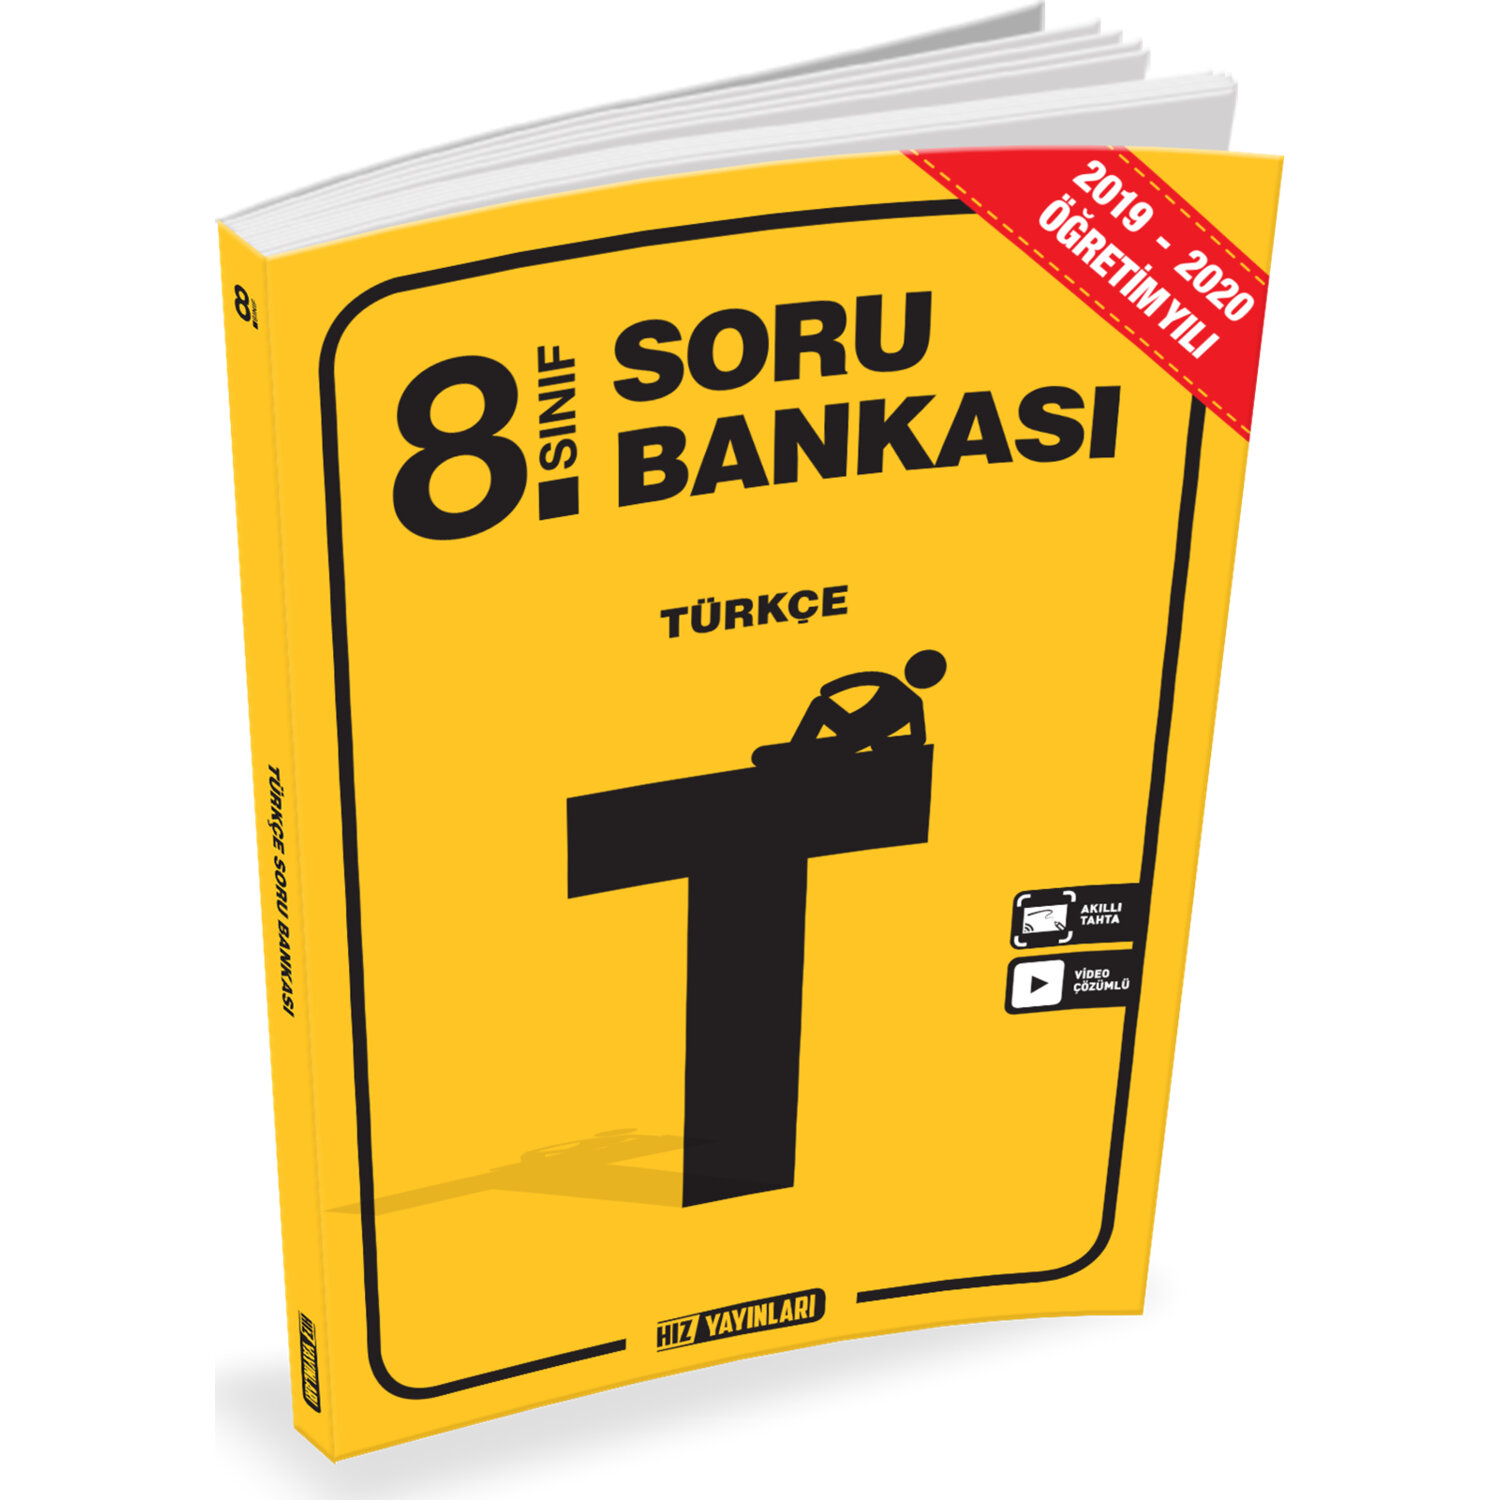 Hız Yayınları 2020 - 8. Sınıf Türkçe Soru Bankası Kitabı ve Fiyatı